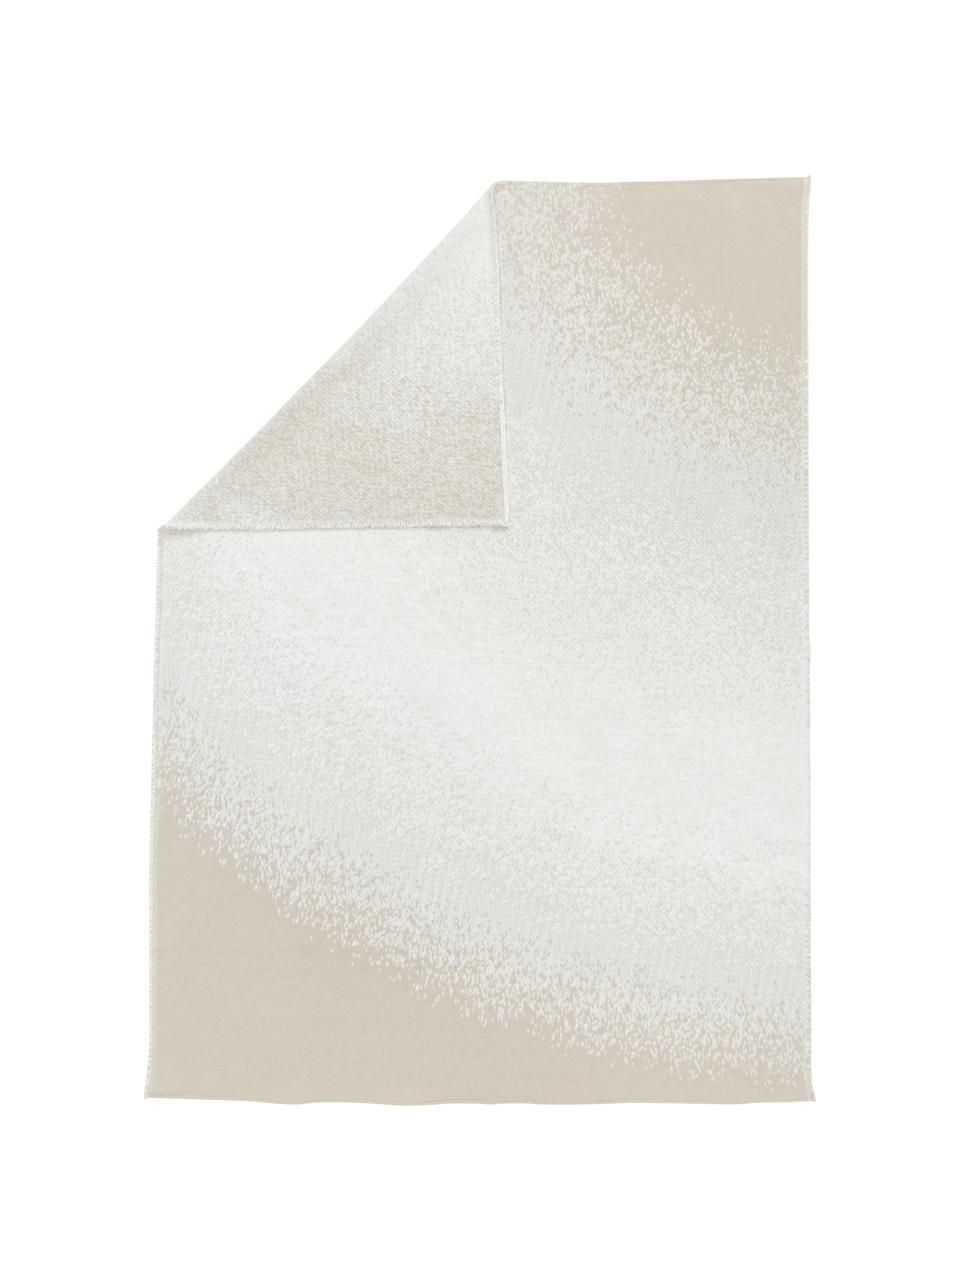 Katoenen  decoratieve plaid met kleurverloop in crèmekleur/beige, 85% katoen, 15% polyacryl, Crèmewit, beige, 130 x 200 cm